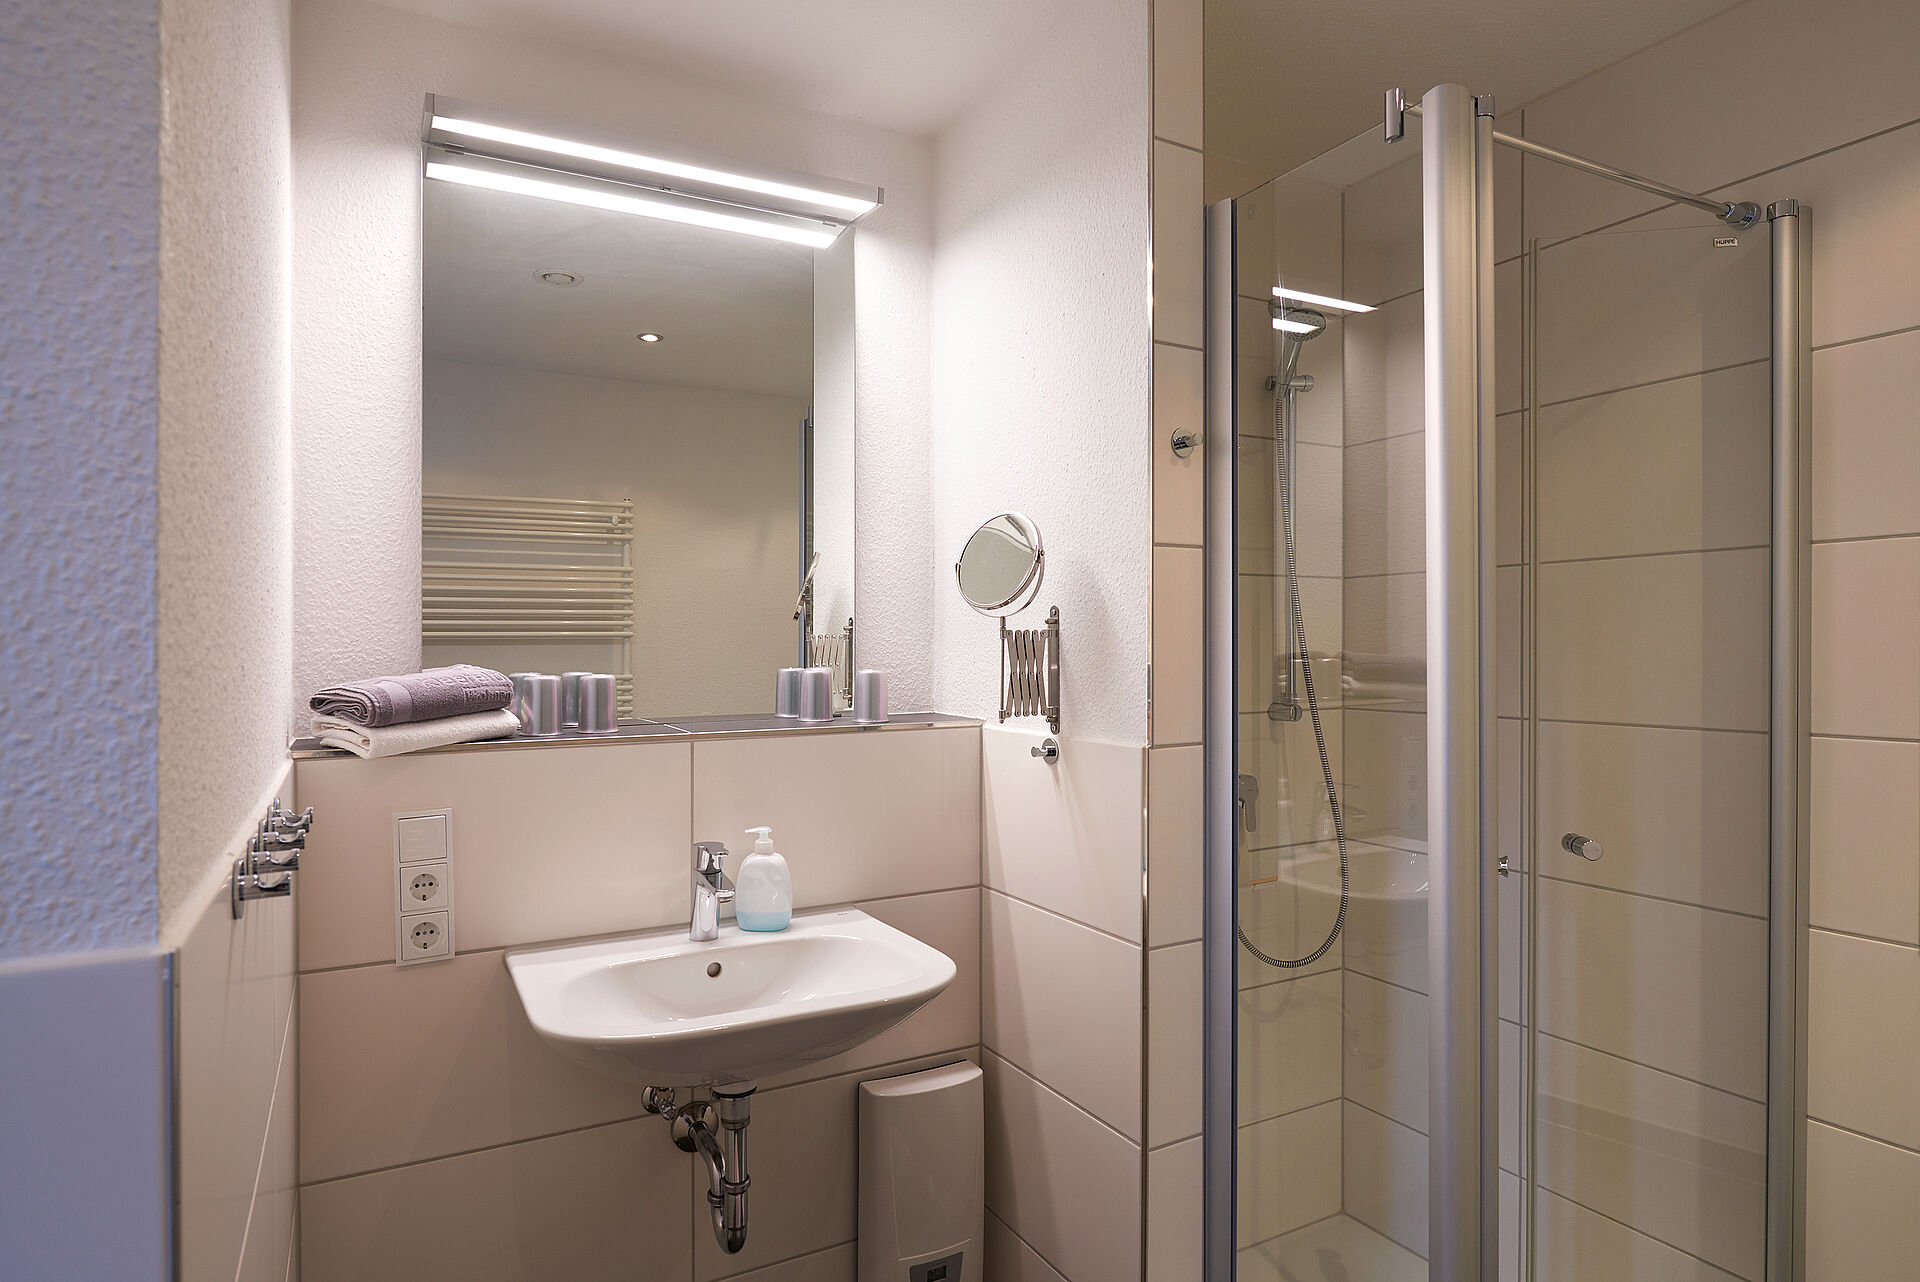 Badezimmer mit beleuchtetem Spiegel, einem Kosmetikspiegel und einer Dusche mit Duschkabine